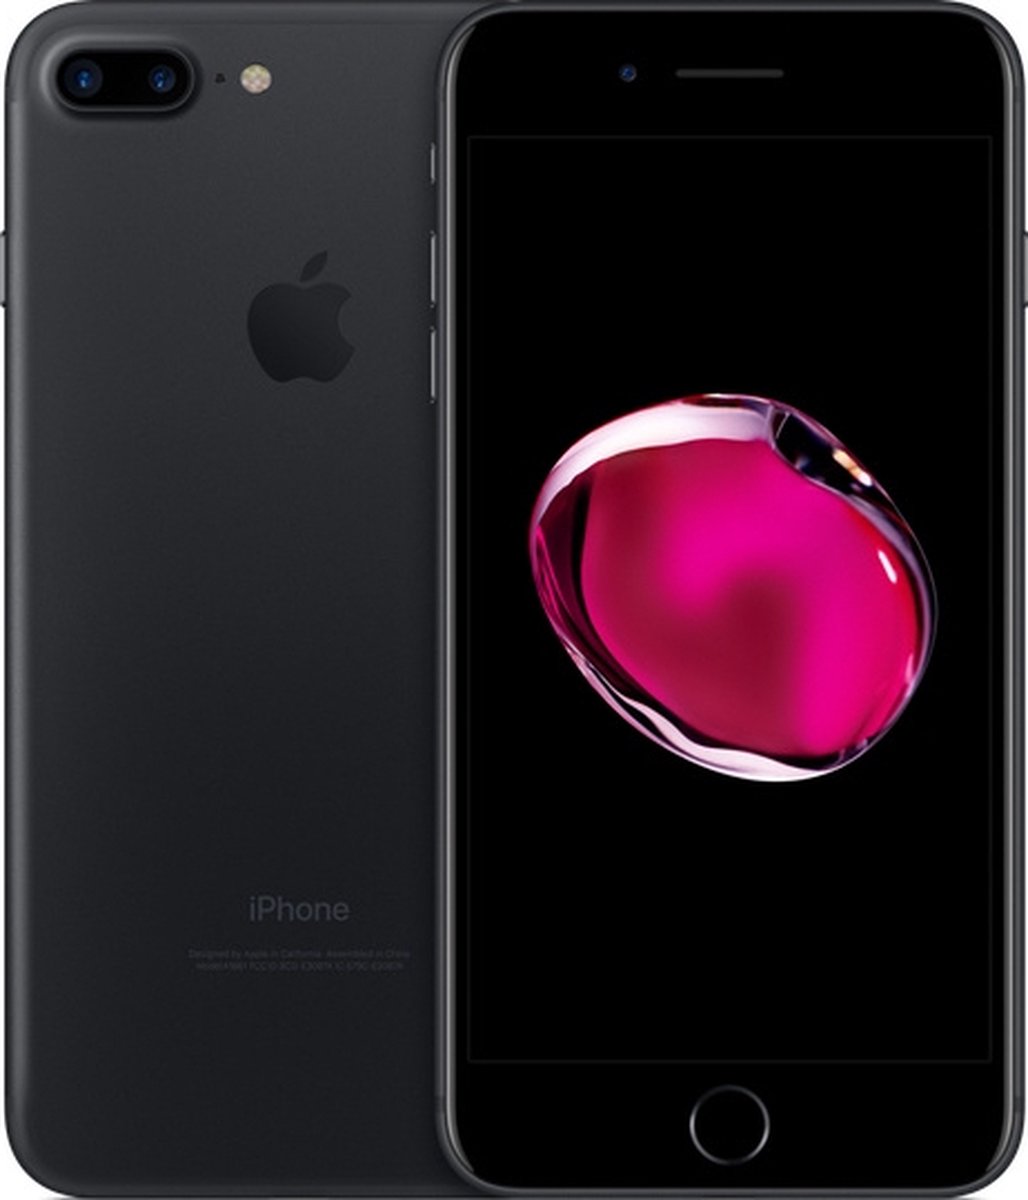 oogst Tegen de wil schade Apple iPhone 7 Plus - 32GB - Spacegrijs | bol.com